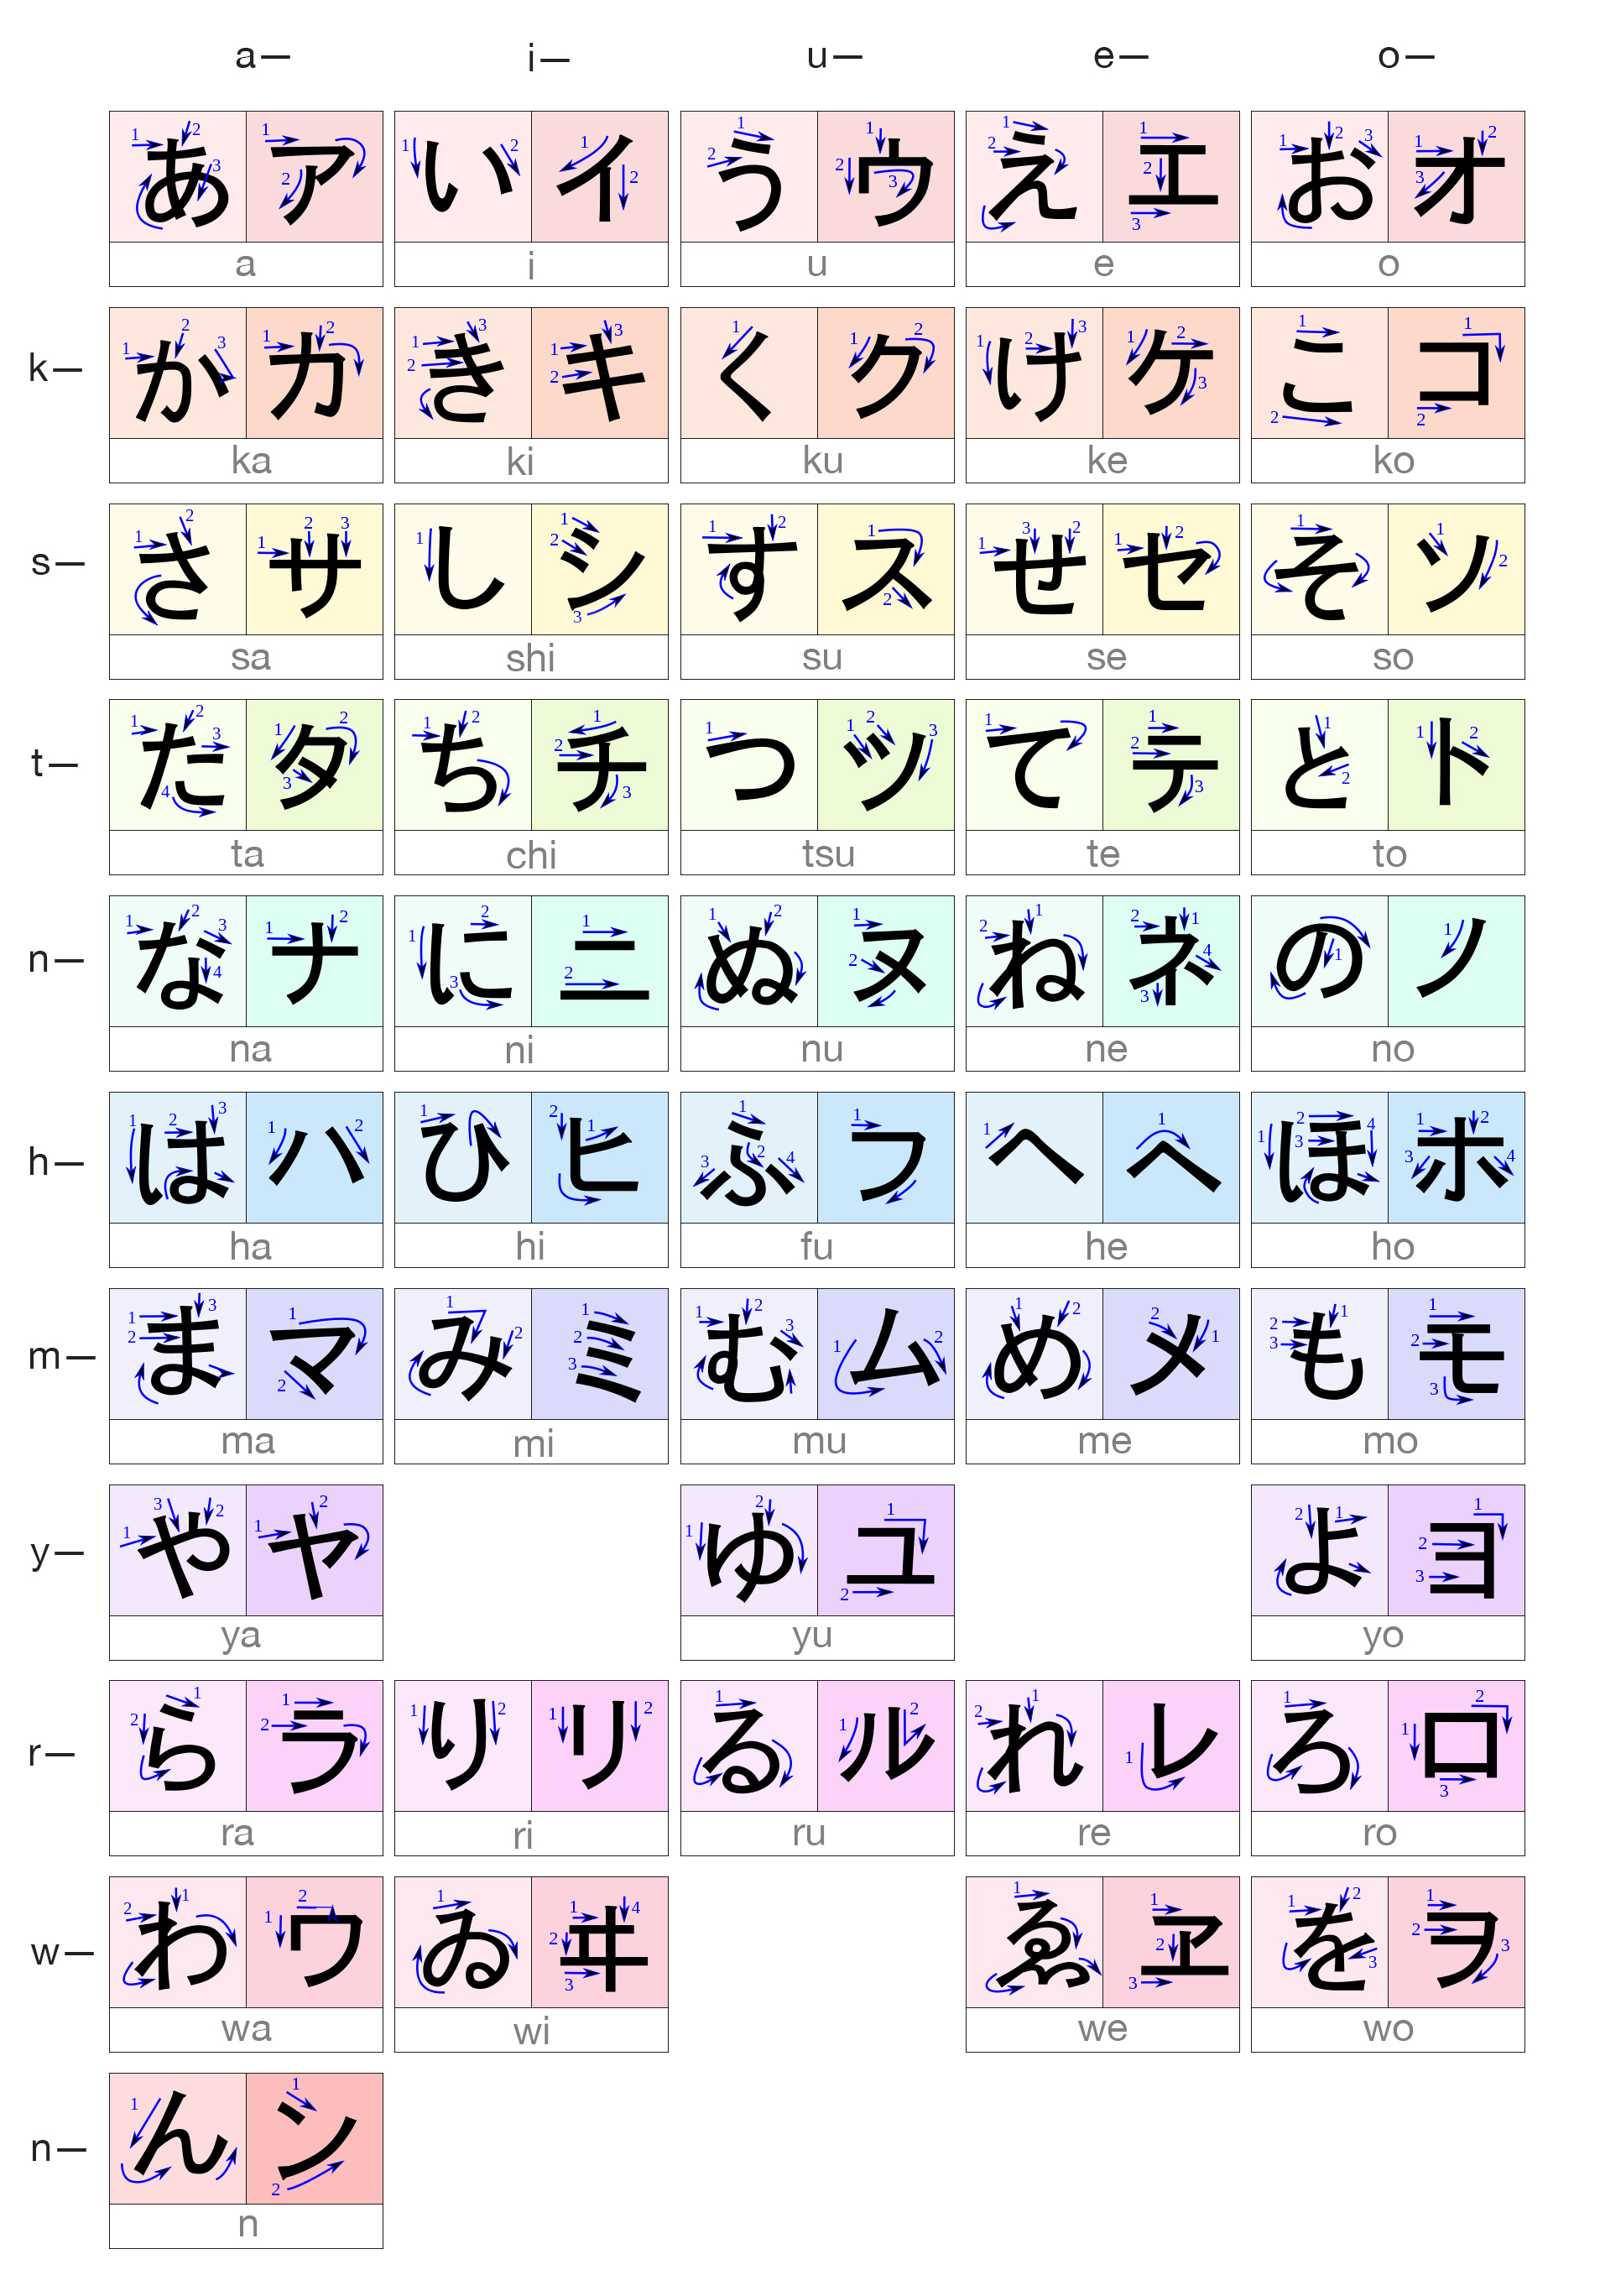 Hướng dẫn viết chữ cái Katakana